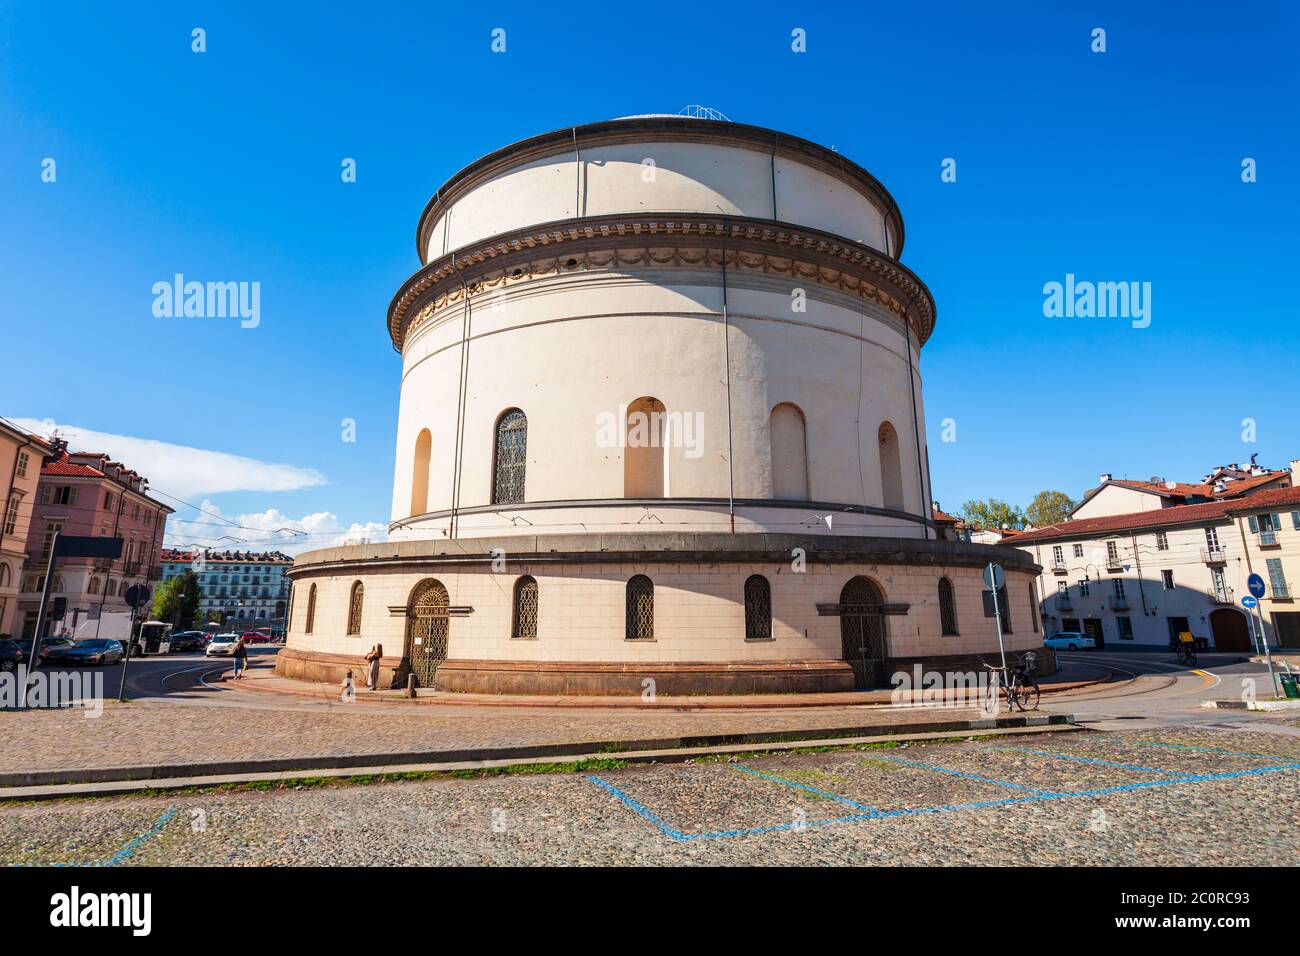 The Church of Gran Madre di Dio is a Neoclassic style church located near the Piazza Vittorio Veneto square in Turin, Italy Stock Photo